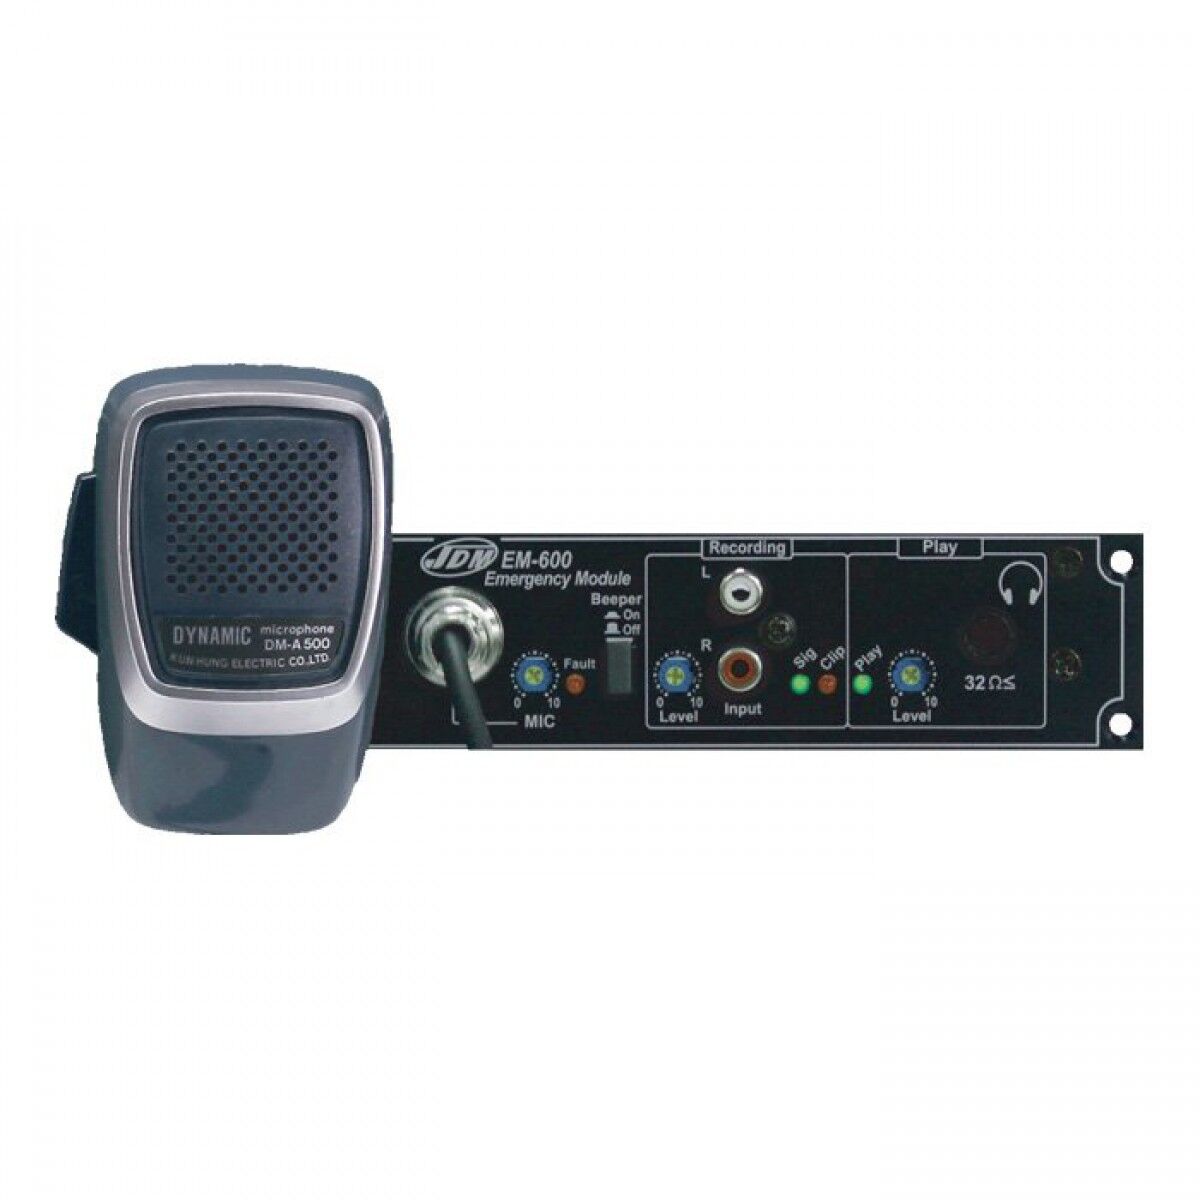 Оборудование для систем звукового оповещения и музыкальной трансляции Jdm em - 600